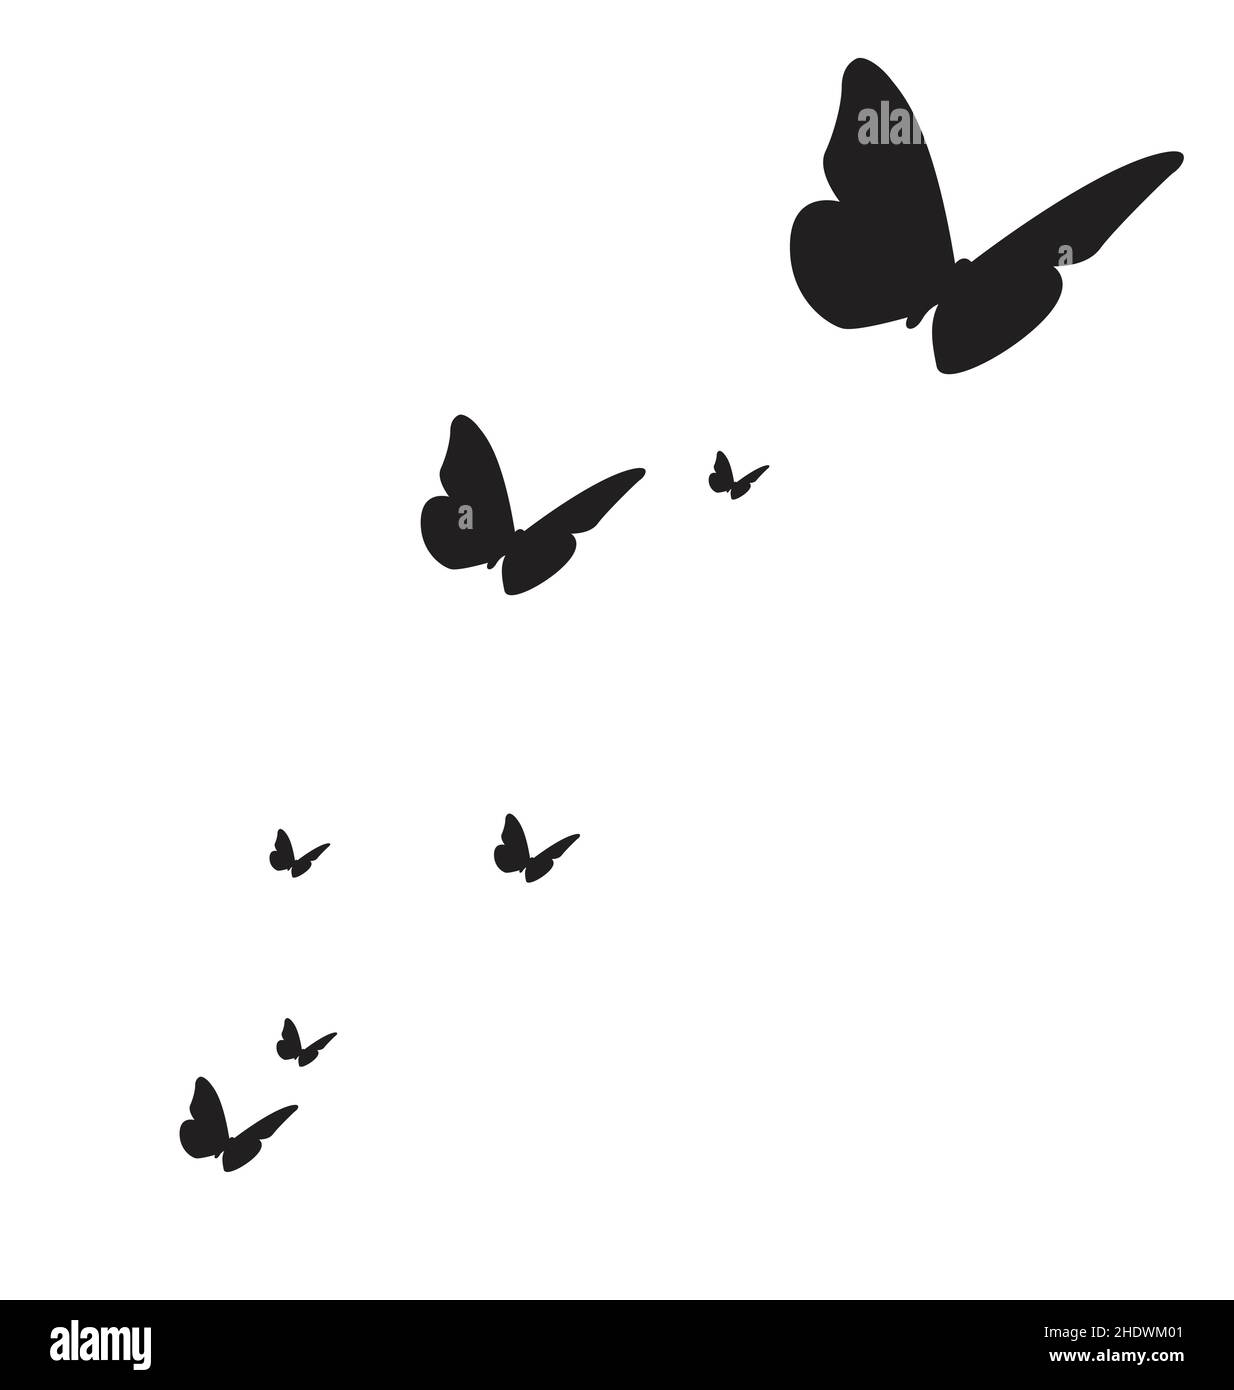 Fliegende schmetterlinge silhouette schwarz mit